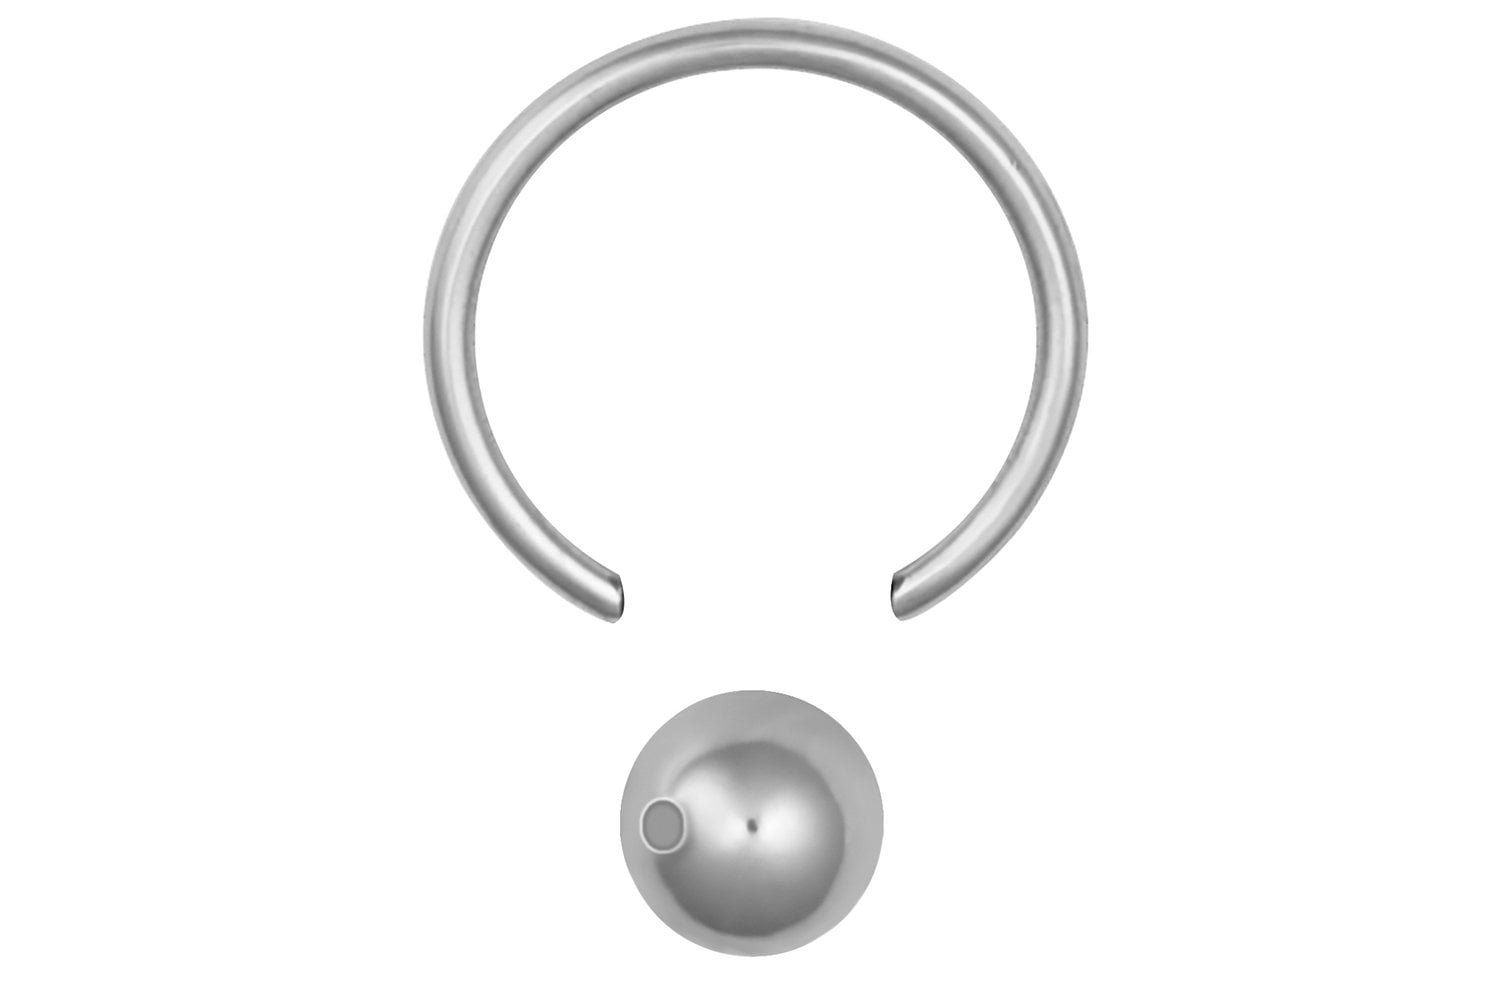 Captive Lip Ear Ring 14 Gauge 5/16" Steel 4mm Ball Body Jewelry 